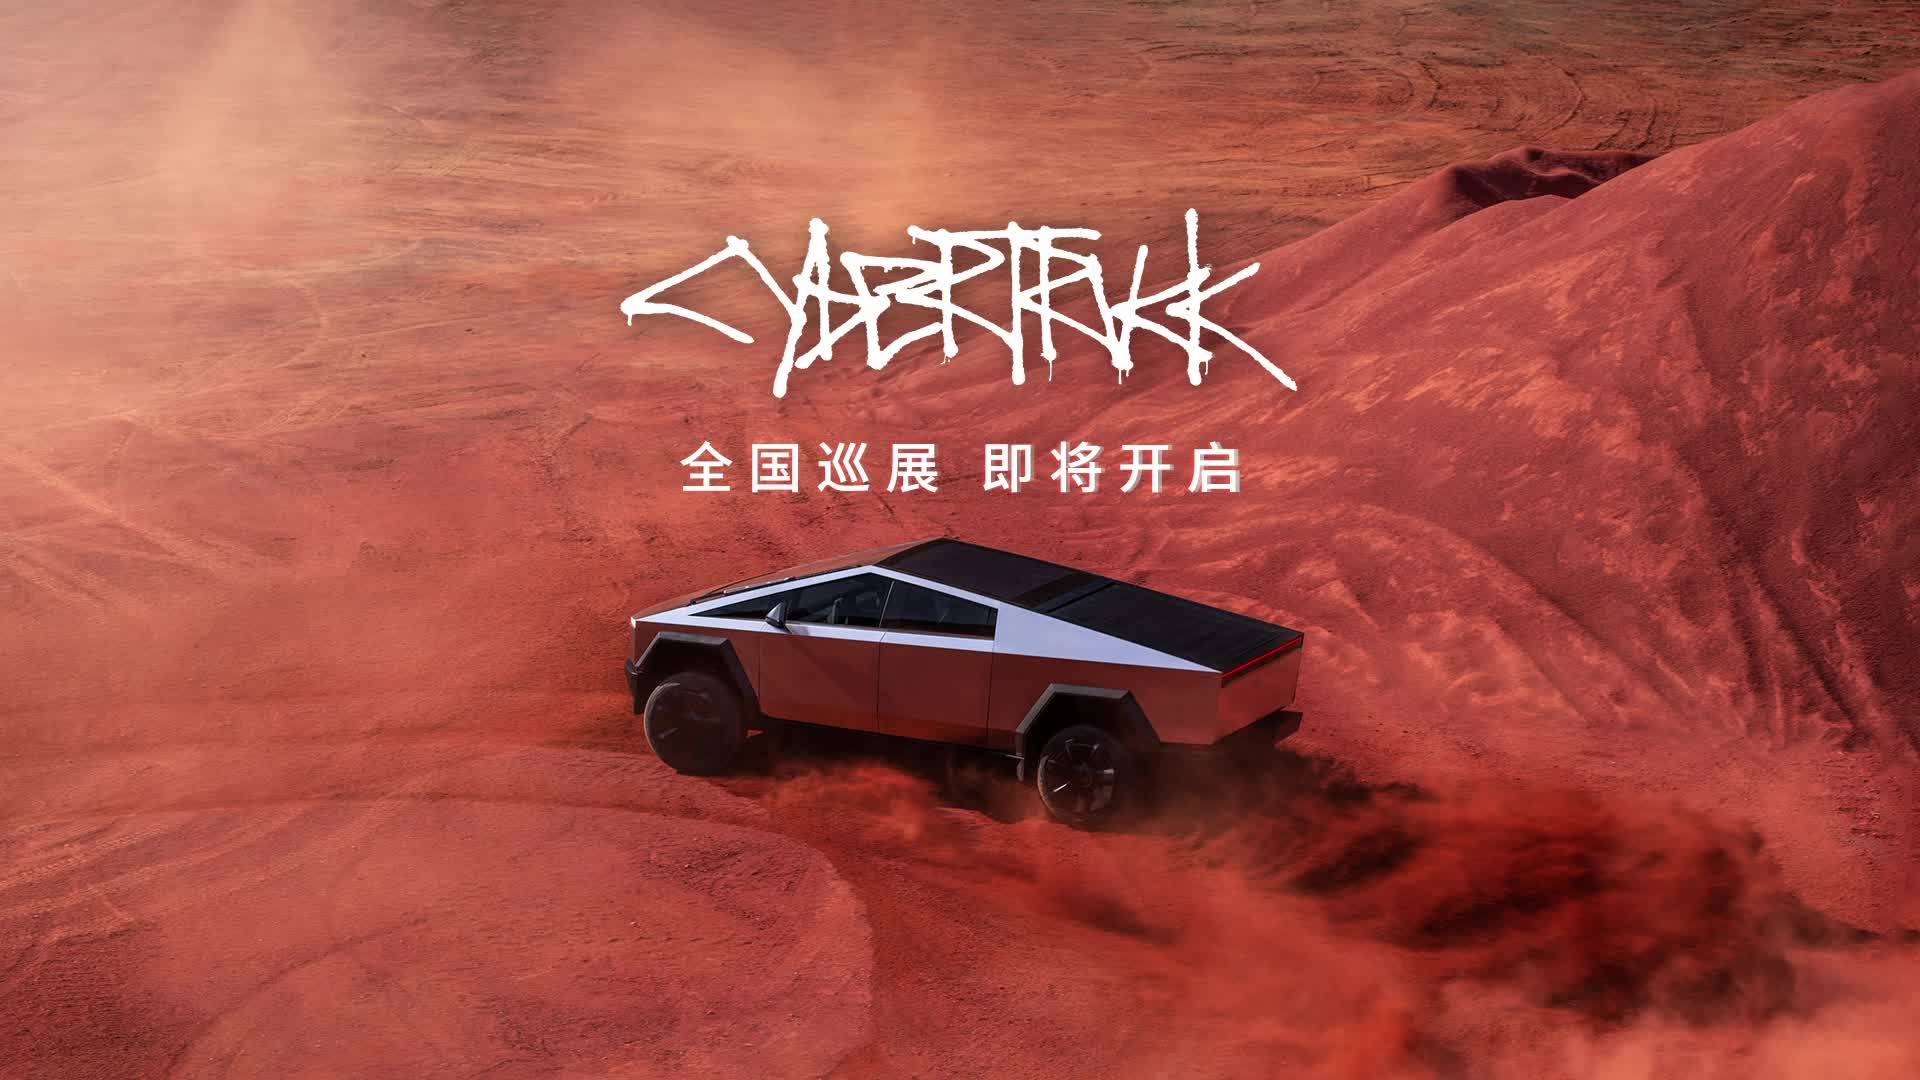 特斯拉 Cybertruck 车型将开启全国巡展，上海、北京等 8 大城市同时亮相